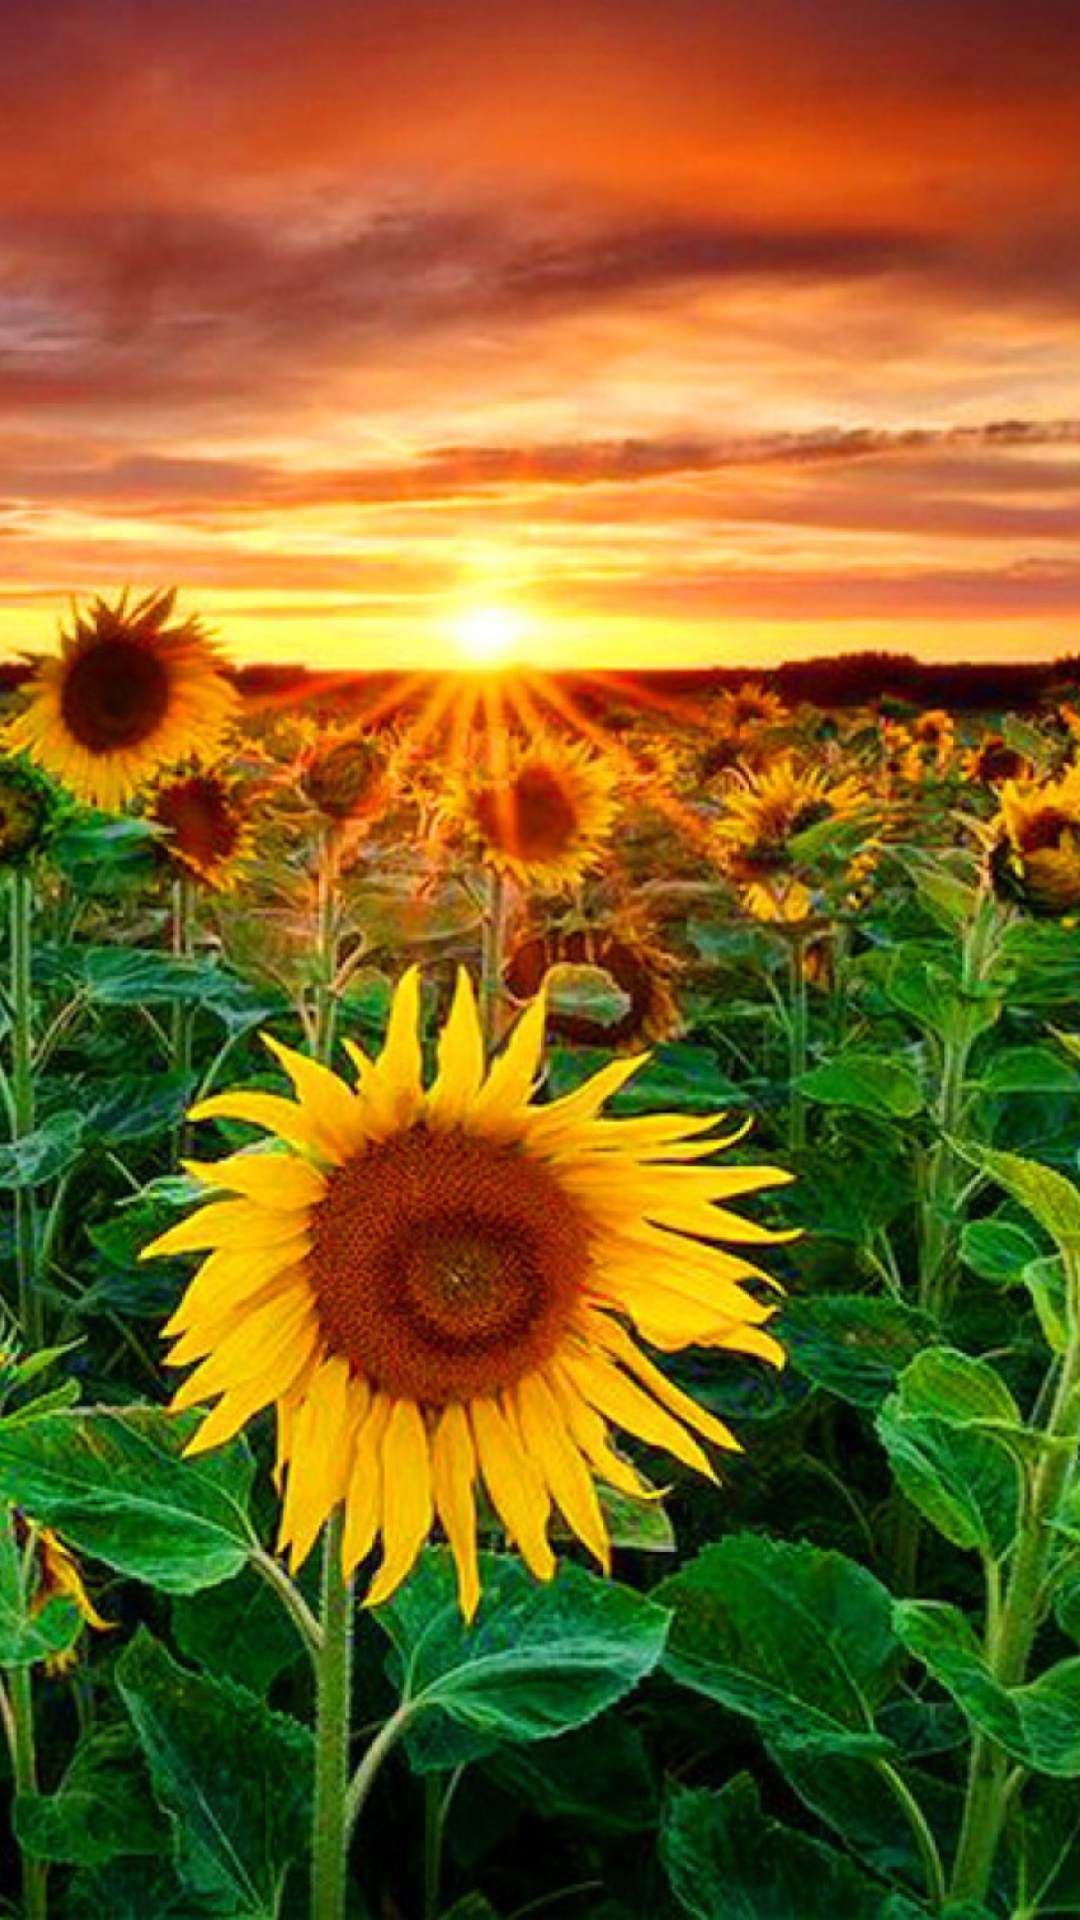 Das Beautiful Sunflower Field At Sunset Wallpaper 1080x1920